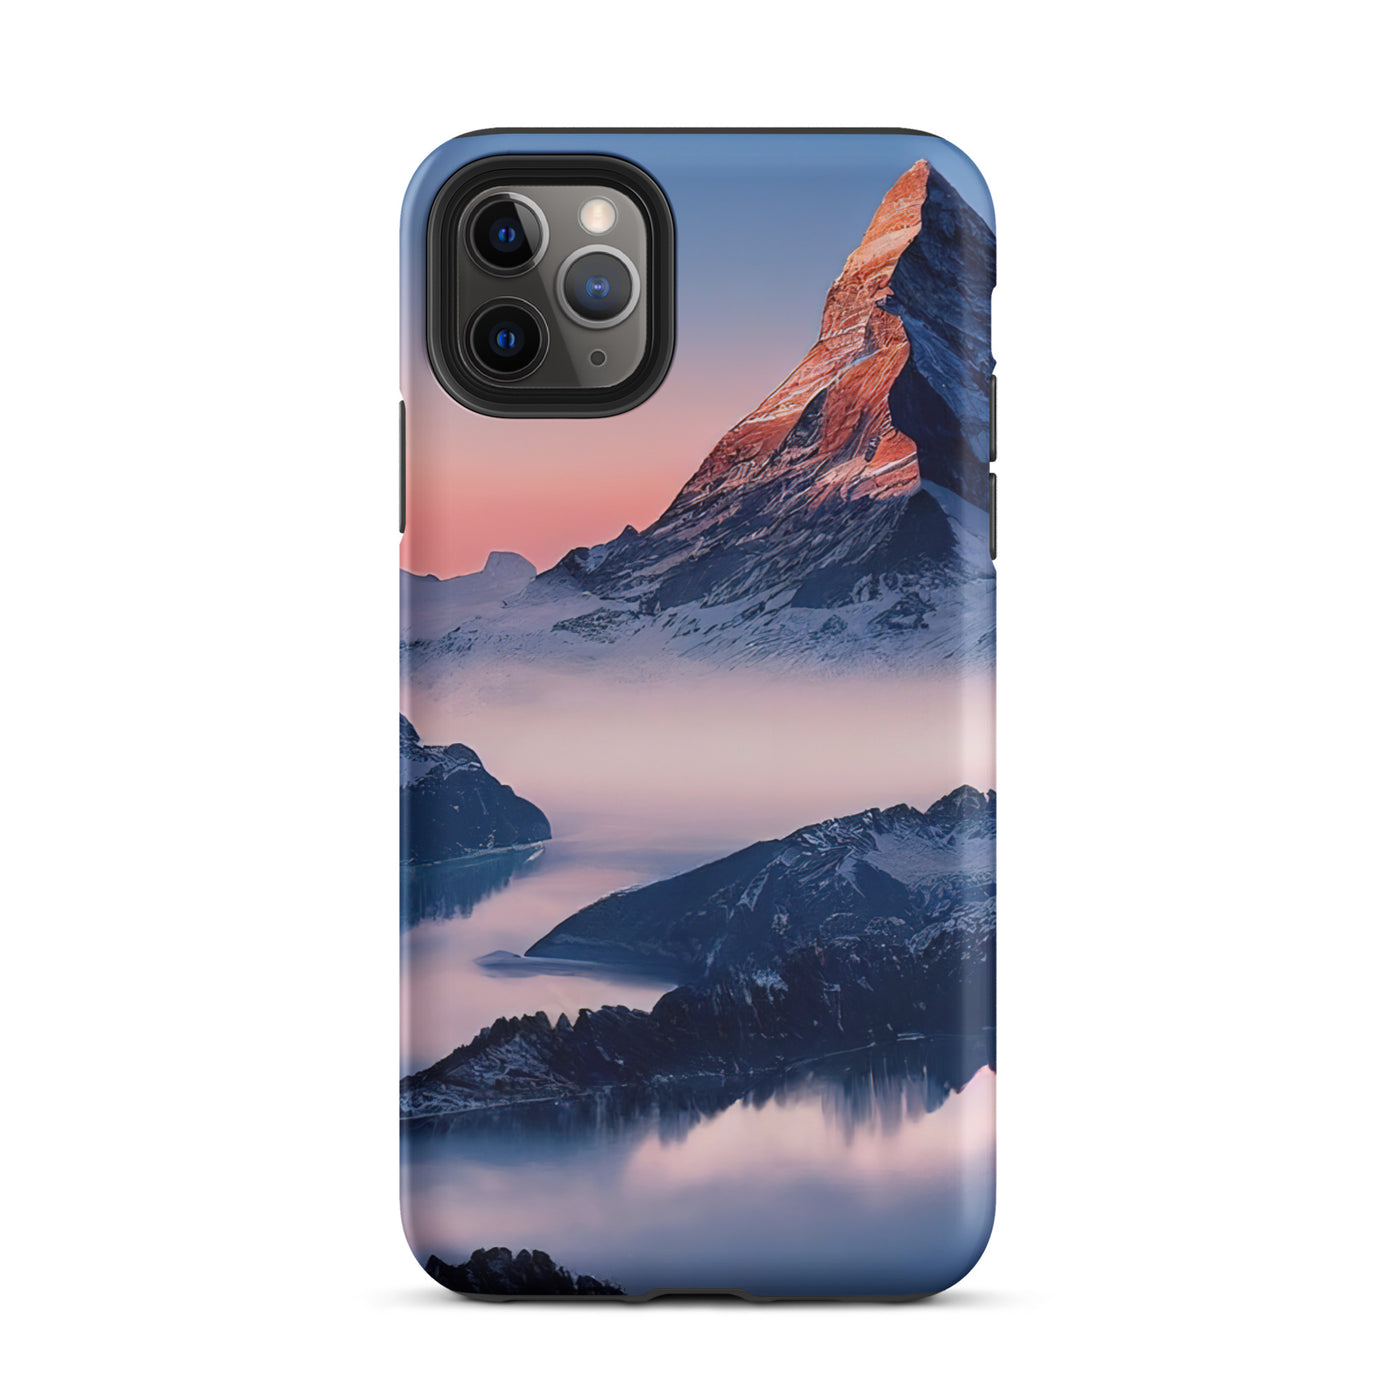 Matternhorn - Nebel - Berglandschaft - Malerei - iPhone Schutzhülle (robust) berge xxx iPhone 11 Pro Max